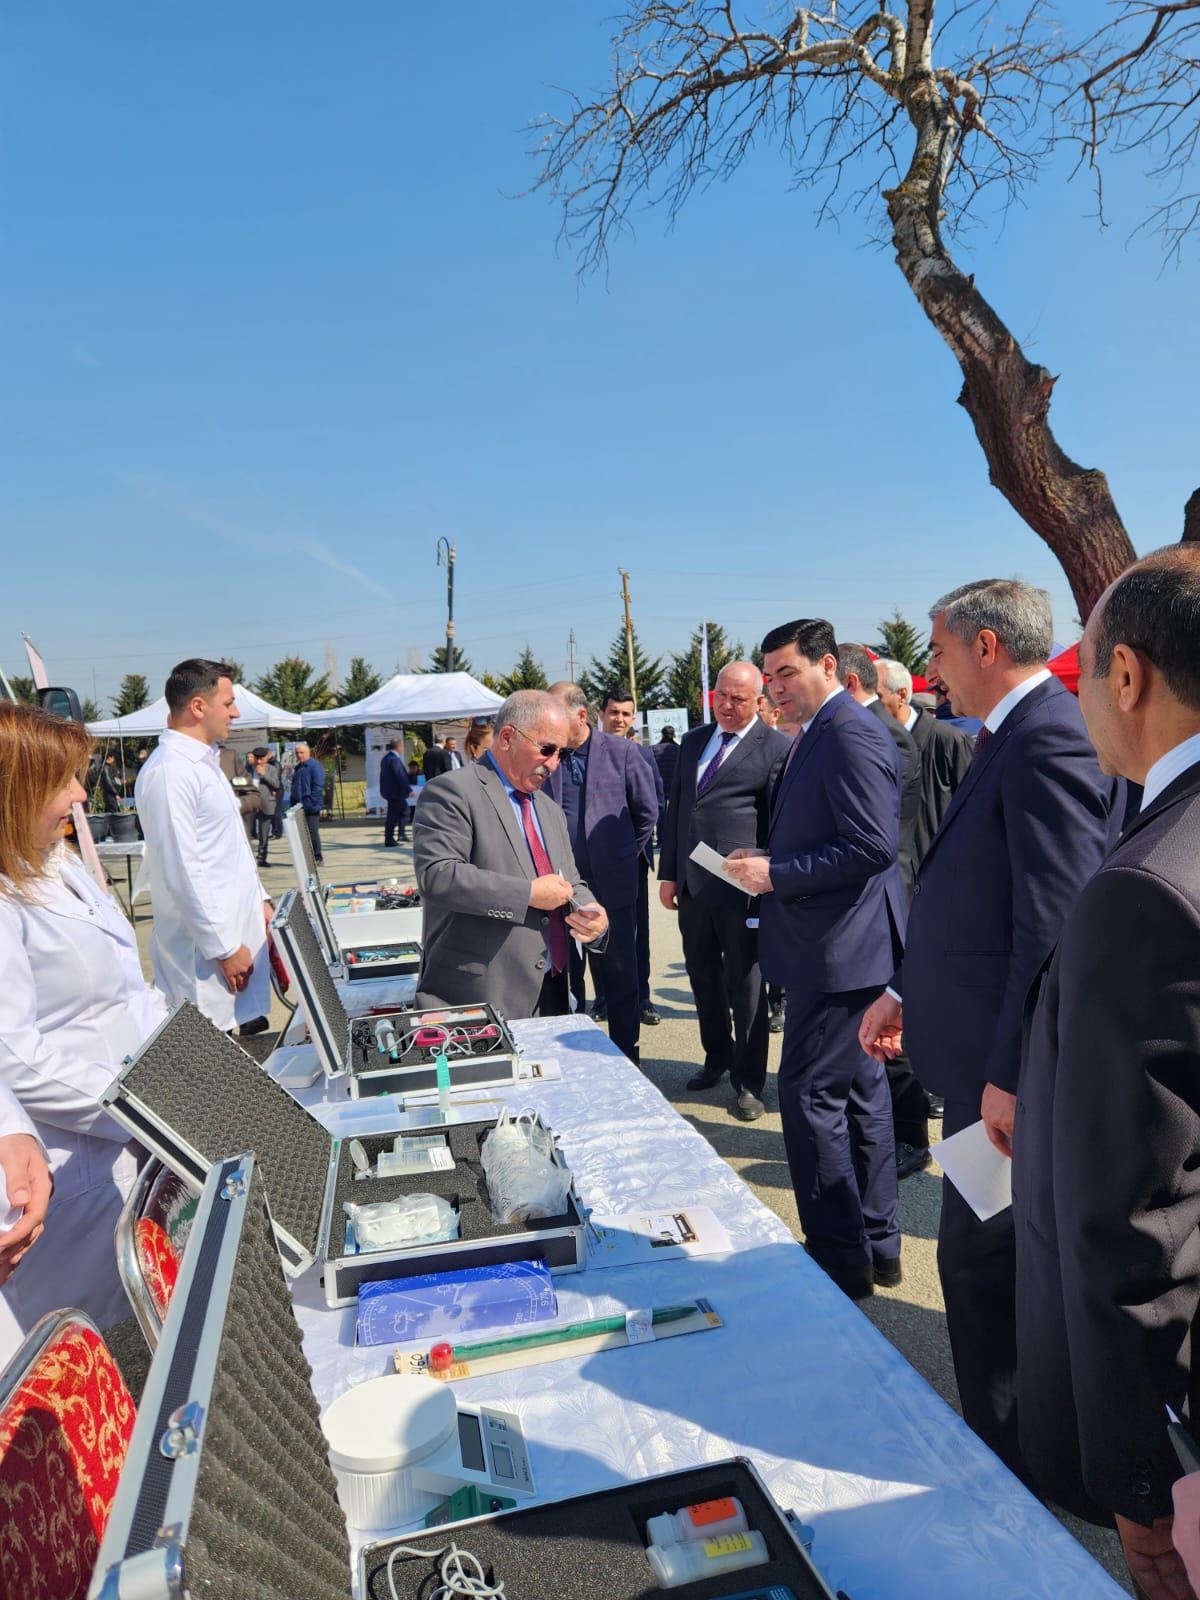 Институт почвоведения и агрохимии Министерство  науки и образования Азербайджанской  Республики  принял участие  в Фестивале аграрных инноваций в Хачмазе